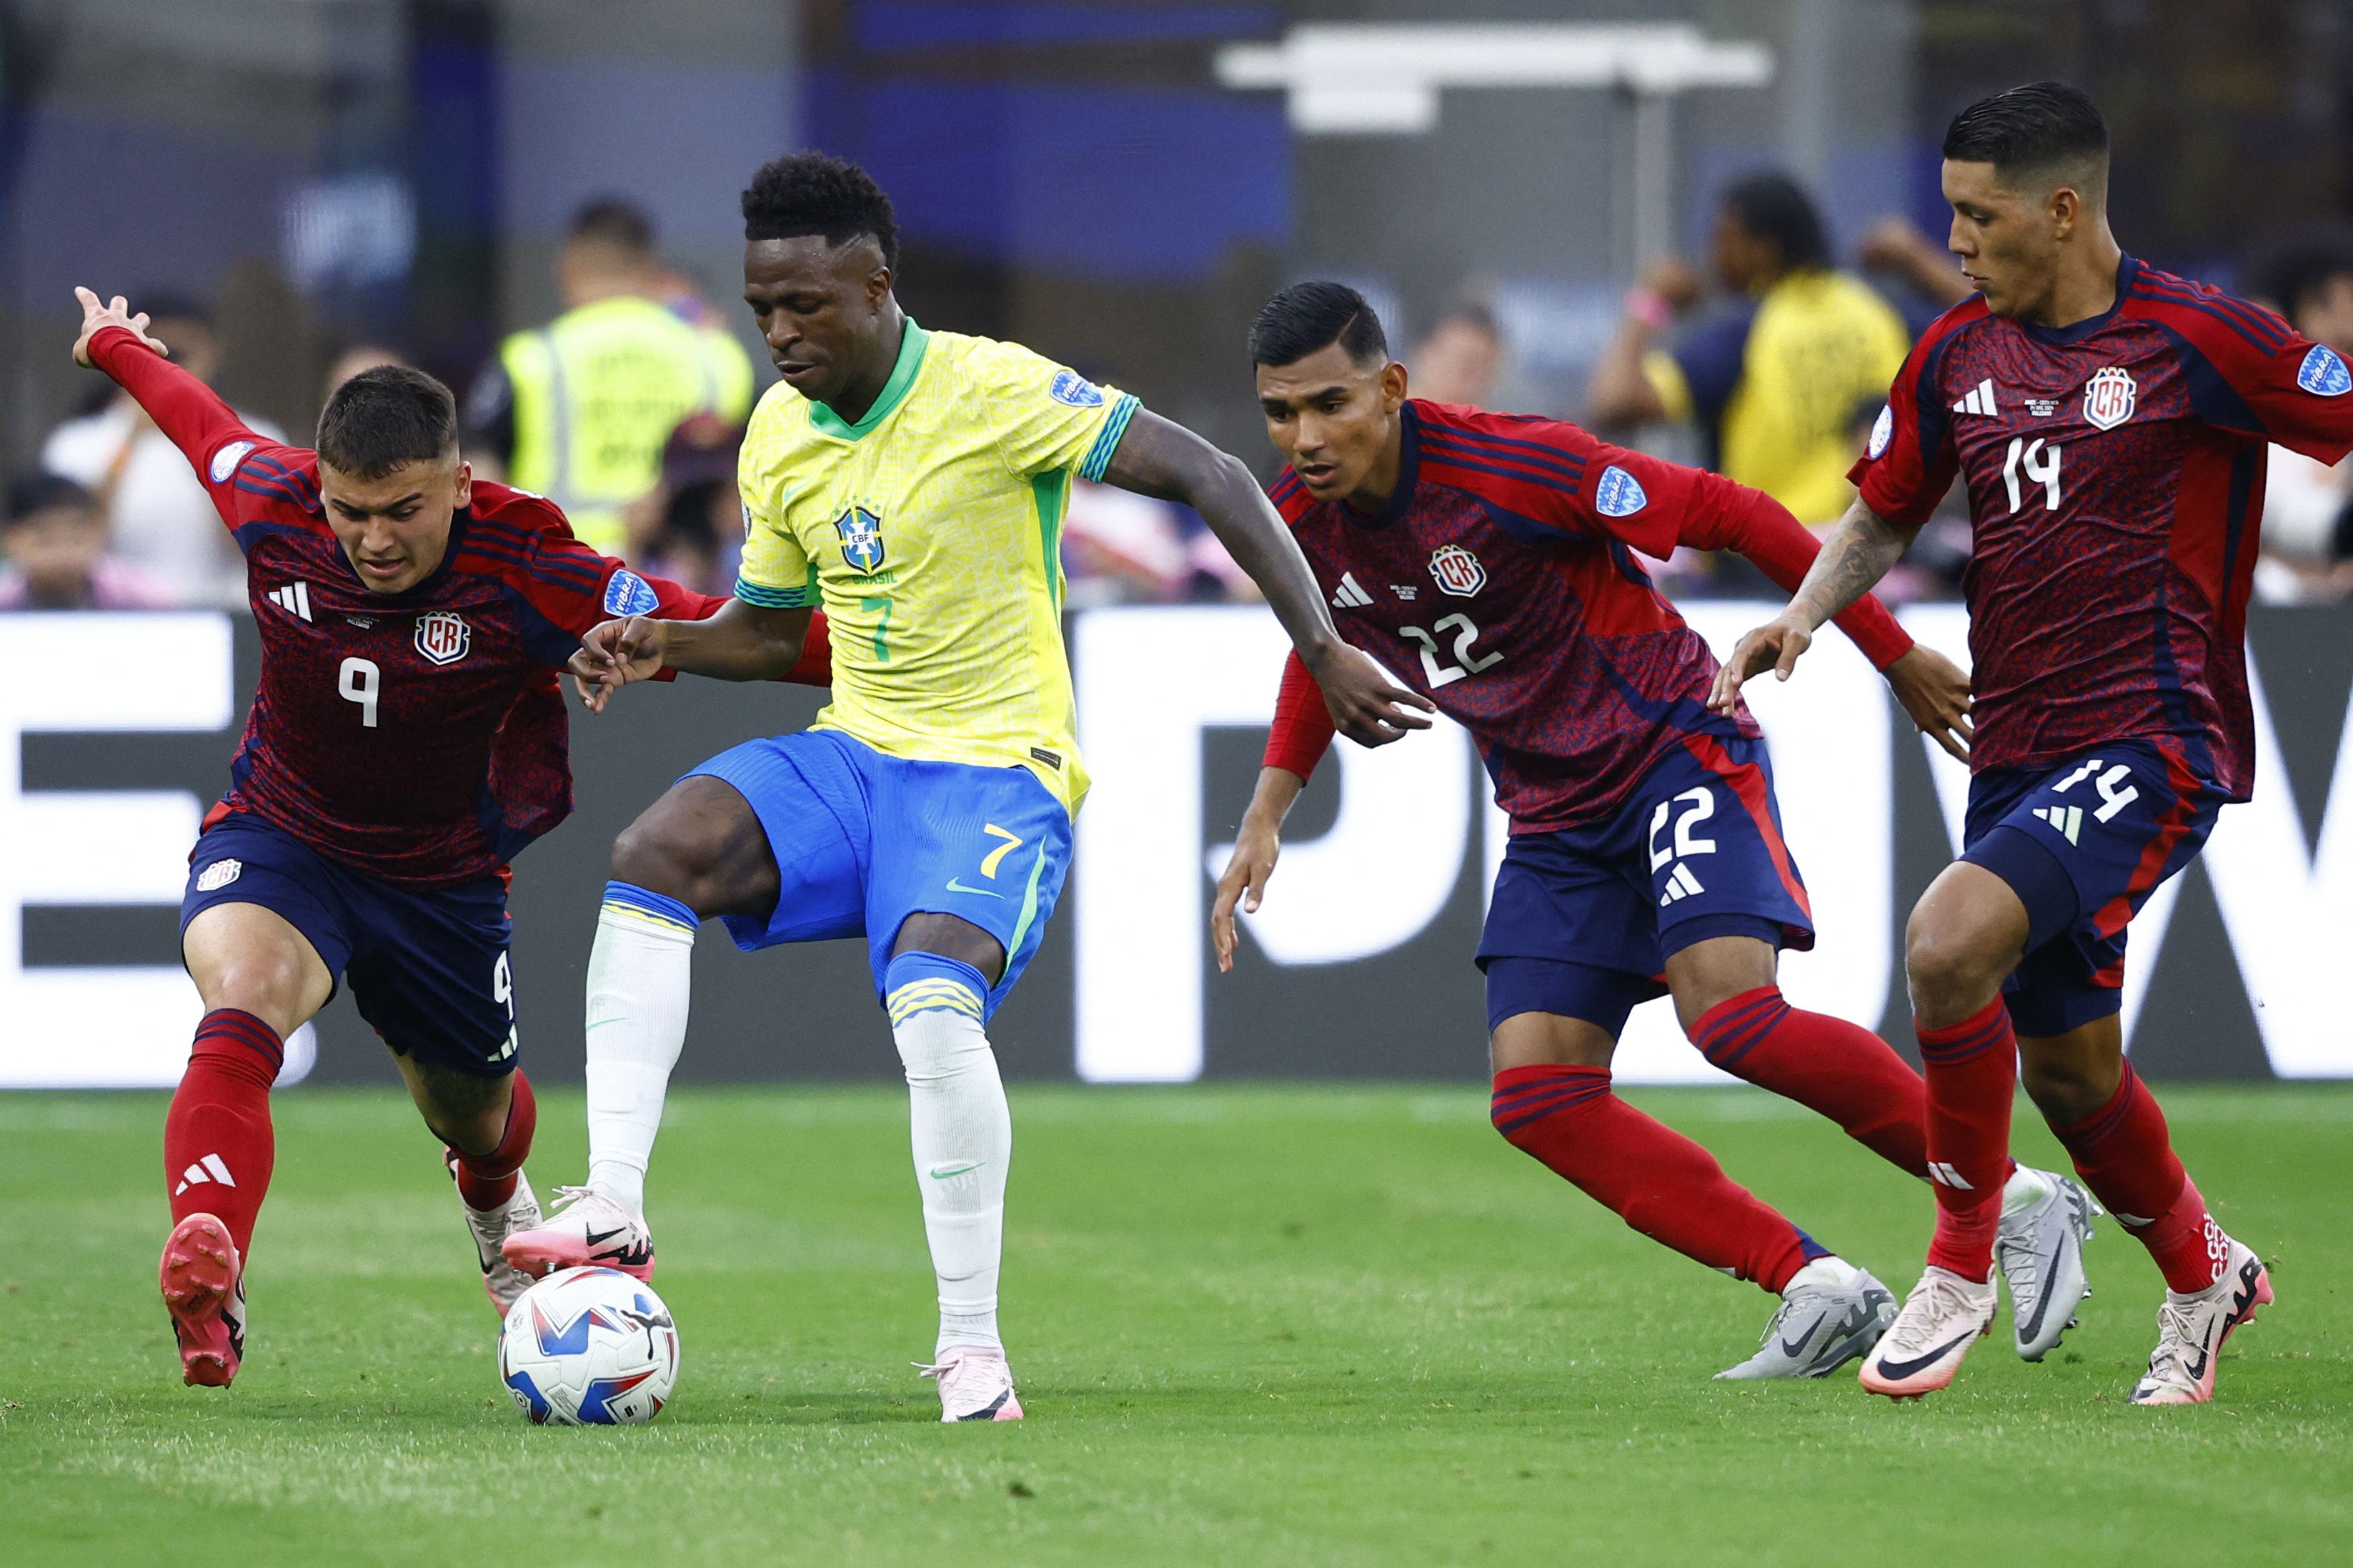 La estrella de Brasil Vinicius Junior (amarillo) sintió la marca ferrea de los jugadores de la Selección de Costa Rica. Manfred Ugalde (9), Haxzel Quirós (22) y Orlando Galo (14) se multiplicaron para frenar a Vini. 